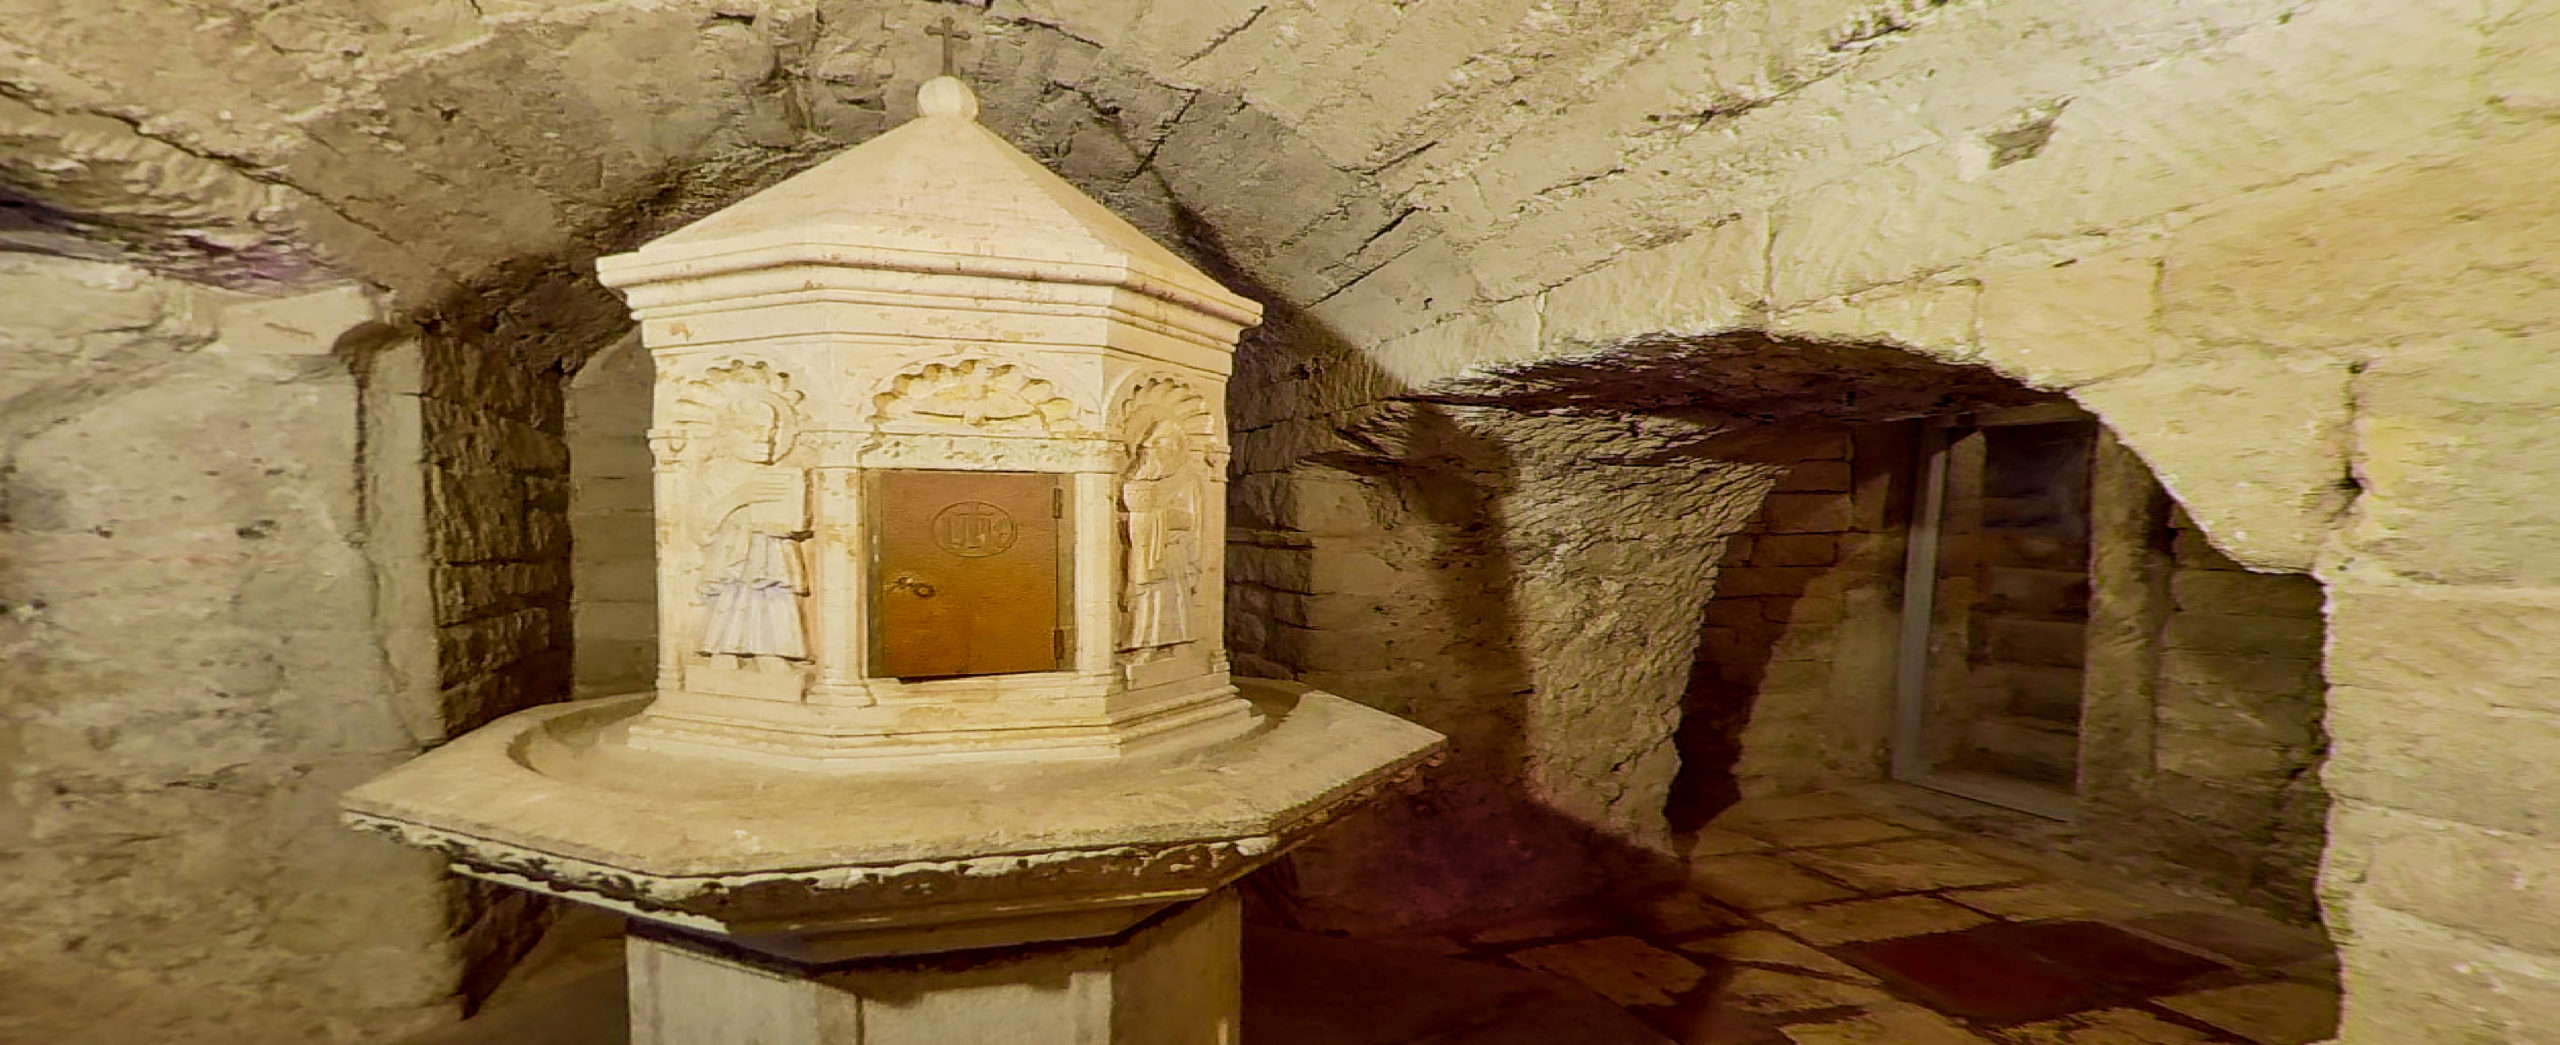 Viterbo - Chiesa di Santa Maria Nuova - la cripta e il fonte battesimale